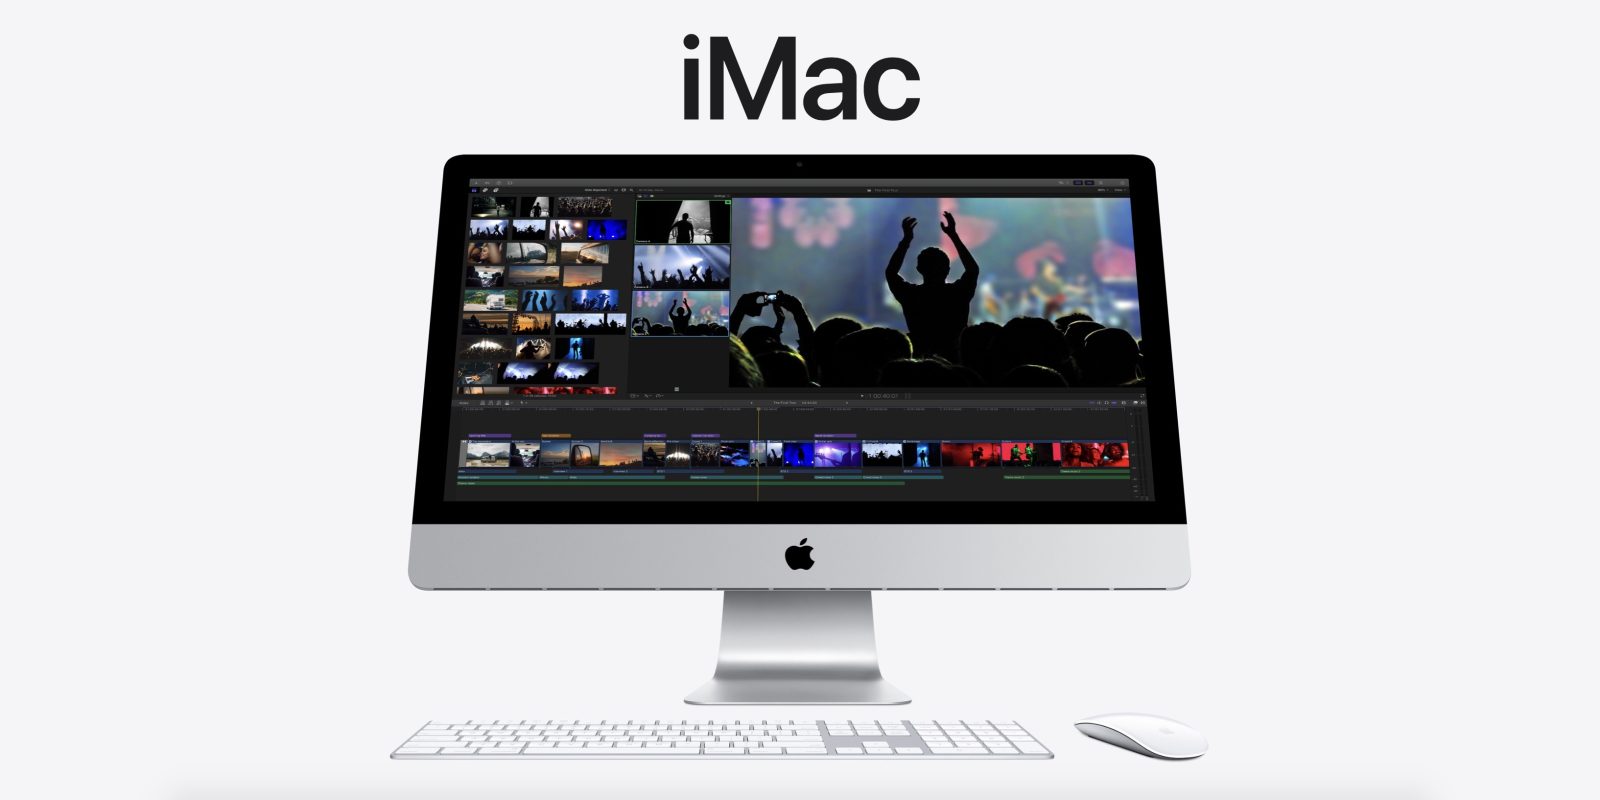 アウトレット人気商品 Apple iMac21.5 inc 2015 ⑥ デスクトップ型PC